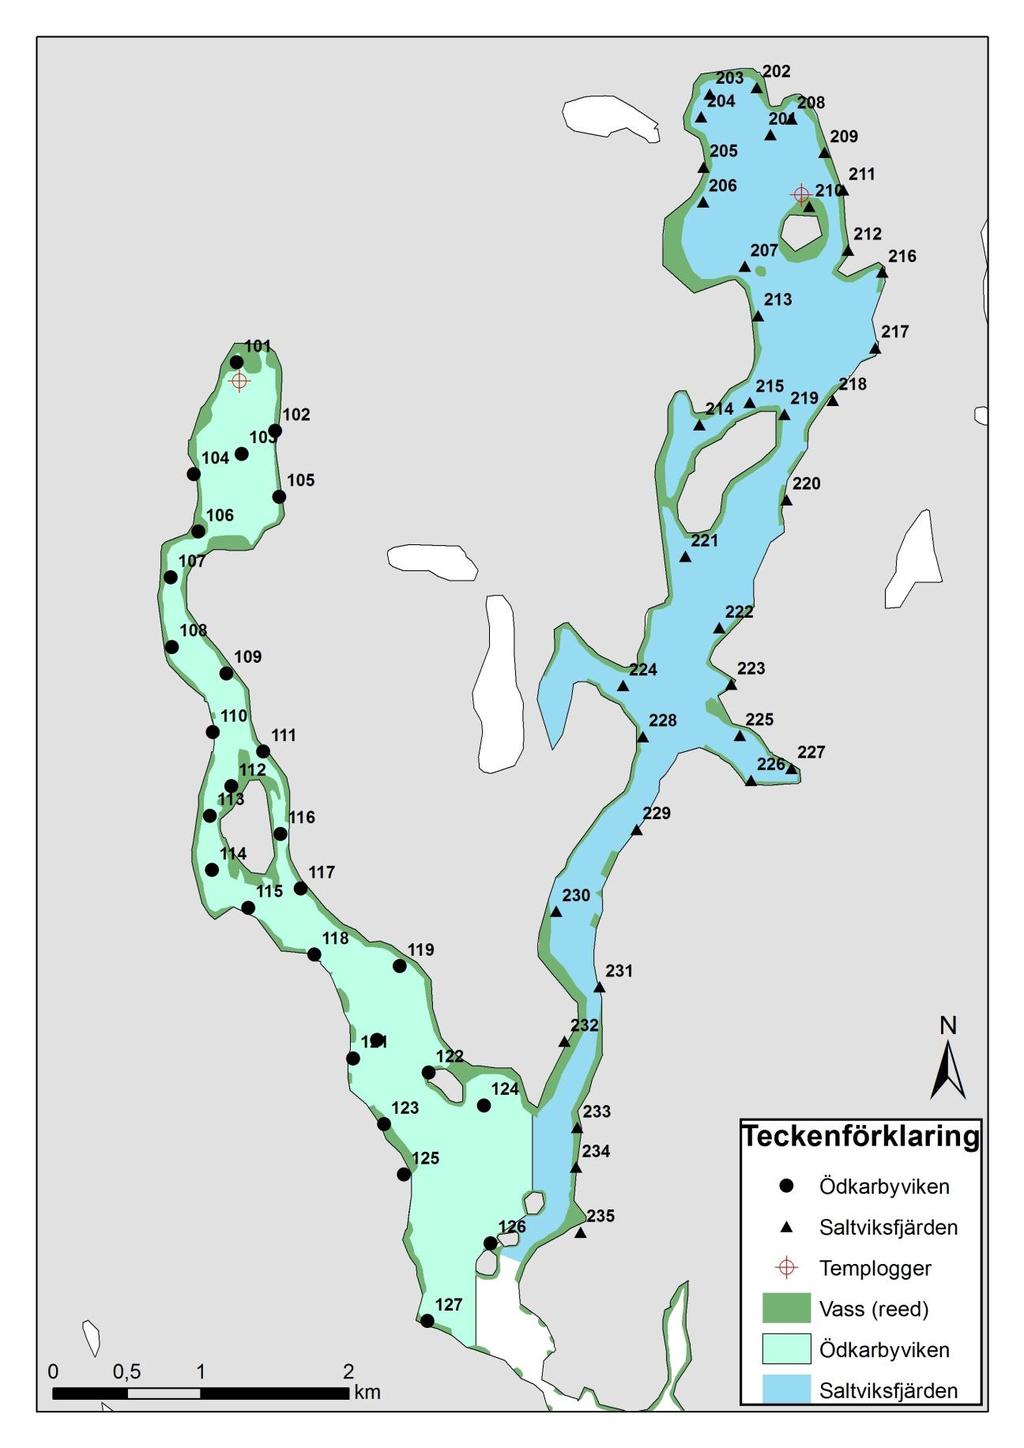 5 Figur 2. Provtagningspunkterna, vassutbredningen samt temploggernas placering i Ödkarbyviken (101-127) och Saltviksfjärden (201-235). Det färglagda områden anger provtagningsområdets gränser.